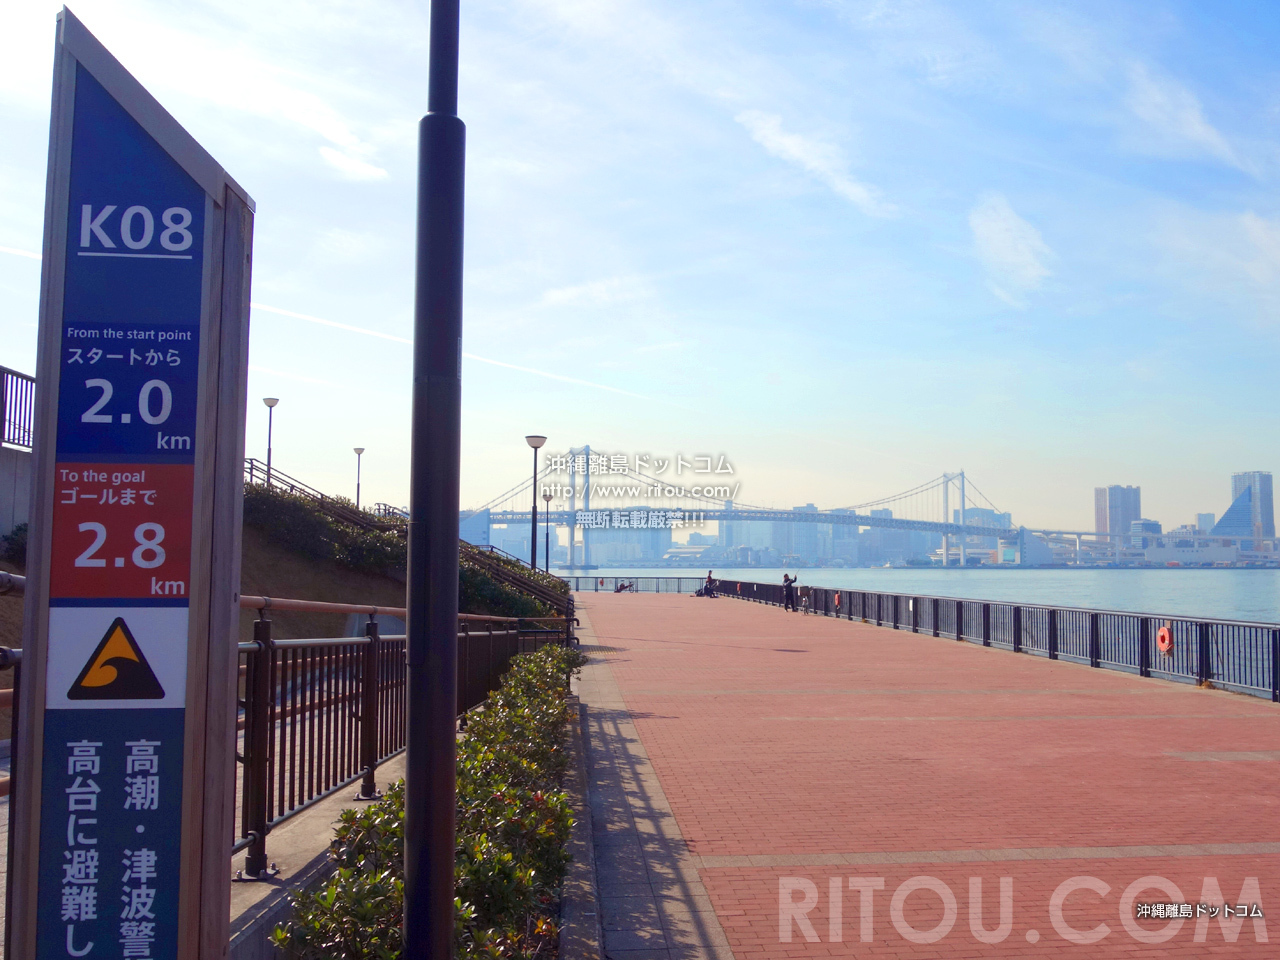 皇居ランは古い 豊洲ラン が今注目 豊洲ぐるり公園をぐるぐるランニング 東京の旅行記 旅行ガイド